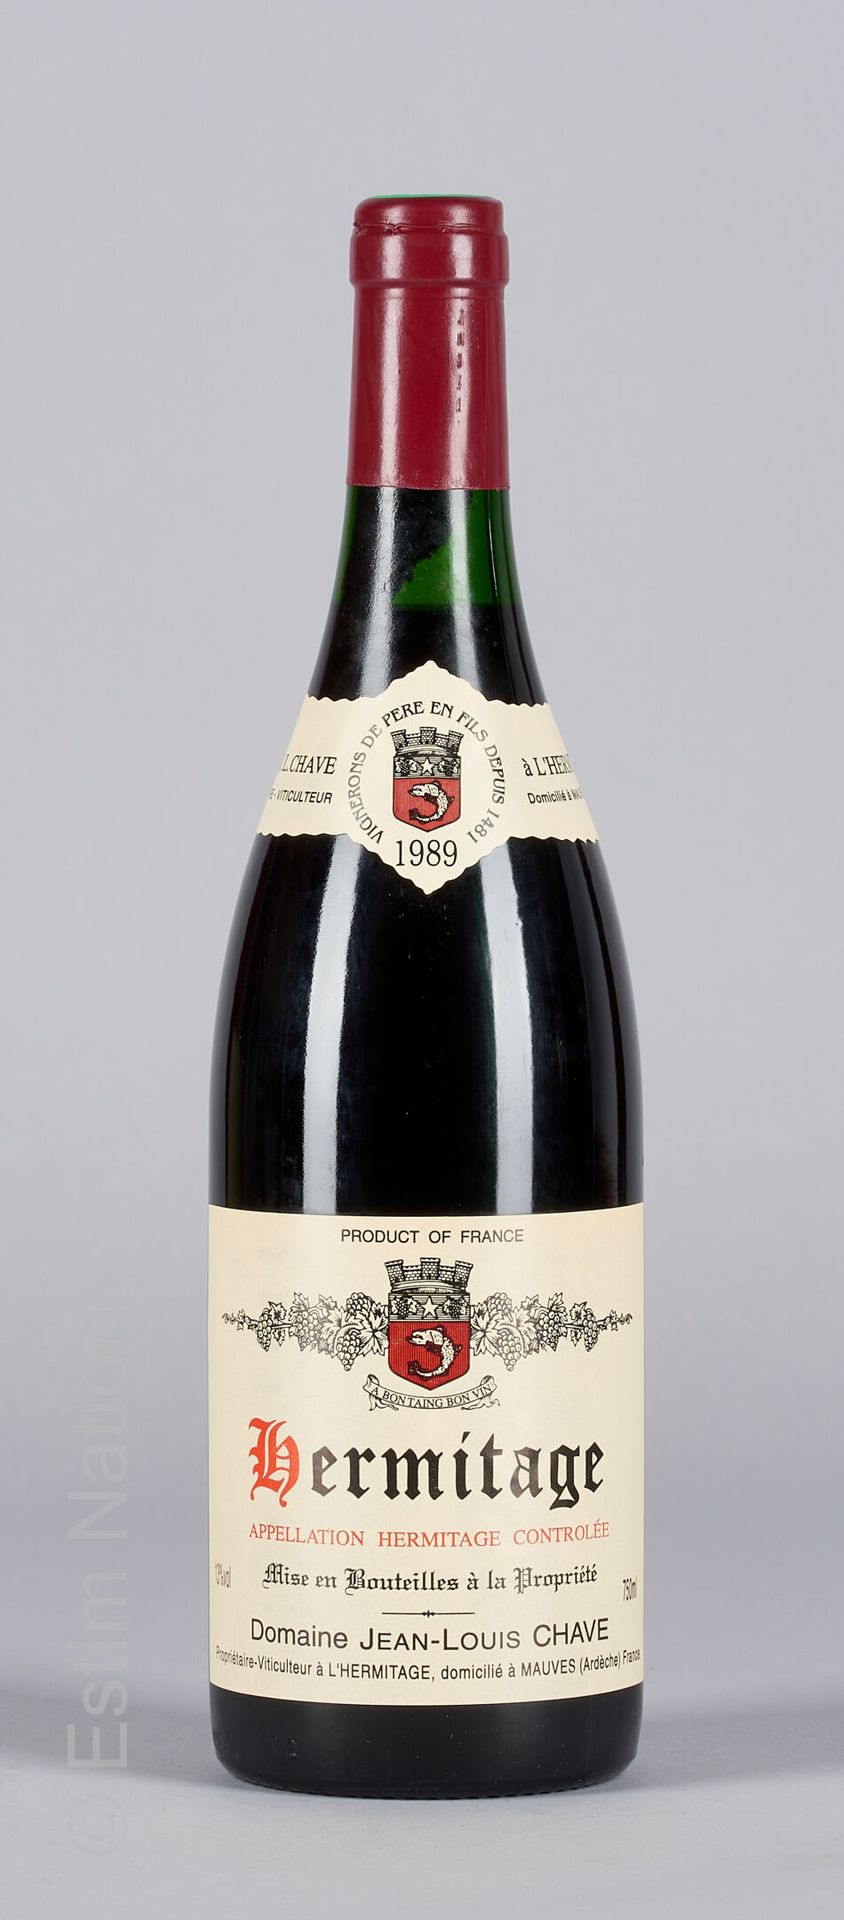 HERMITAGE ROUGE HERMITAGE 1989 Jean-Louis Chave 1瓶

(N. 在2和2.5厘米之间)